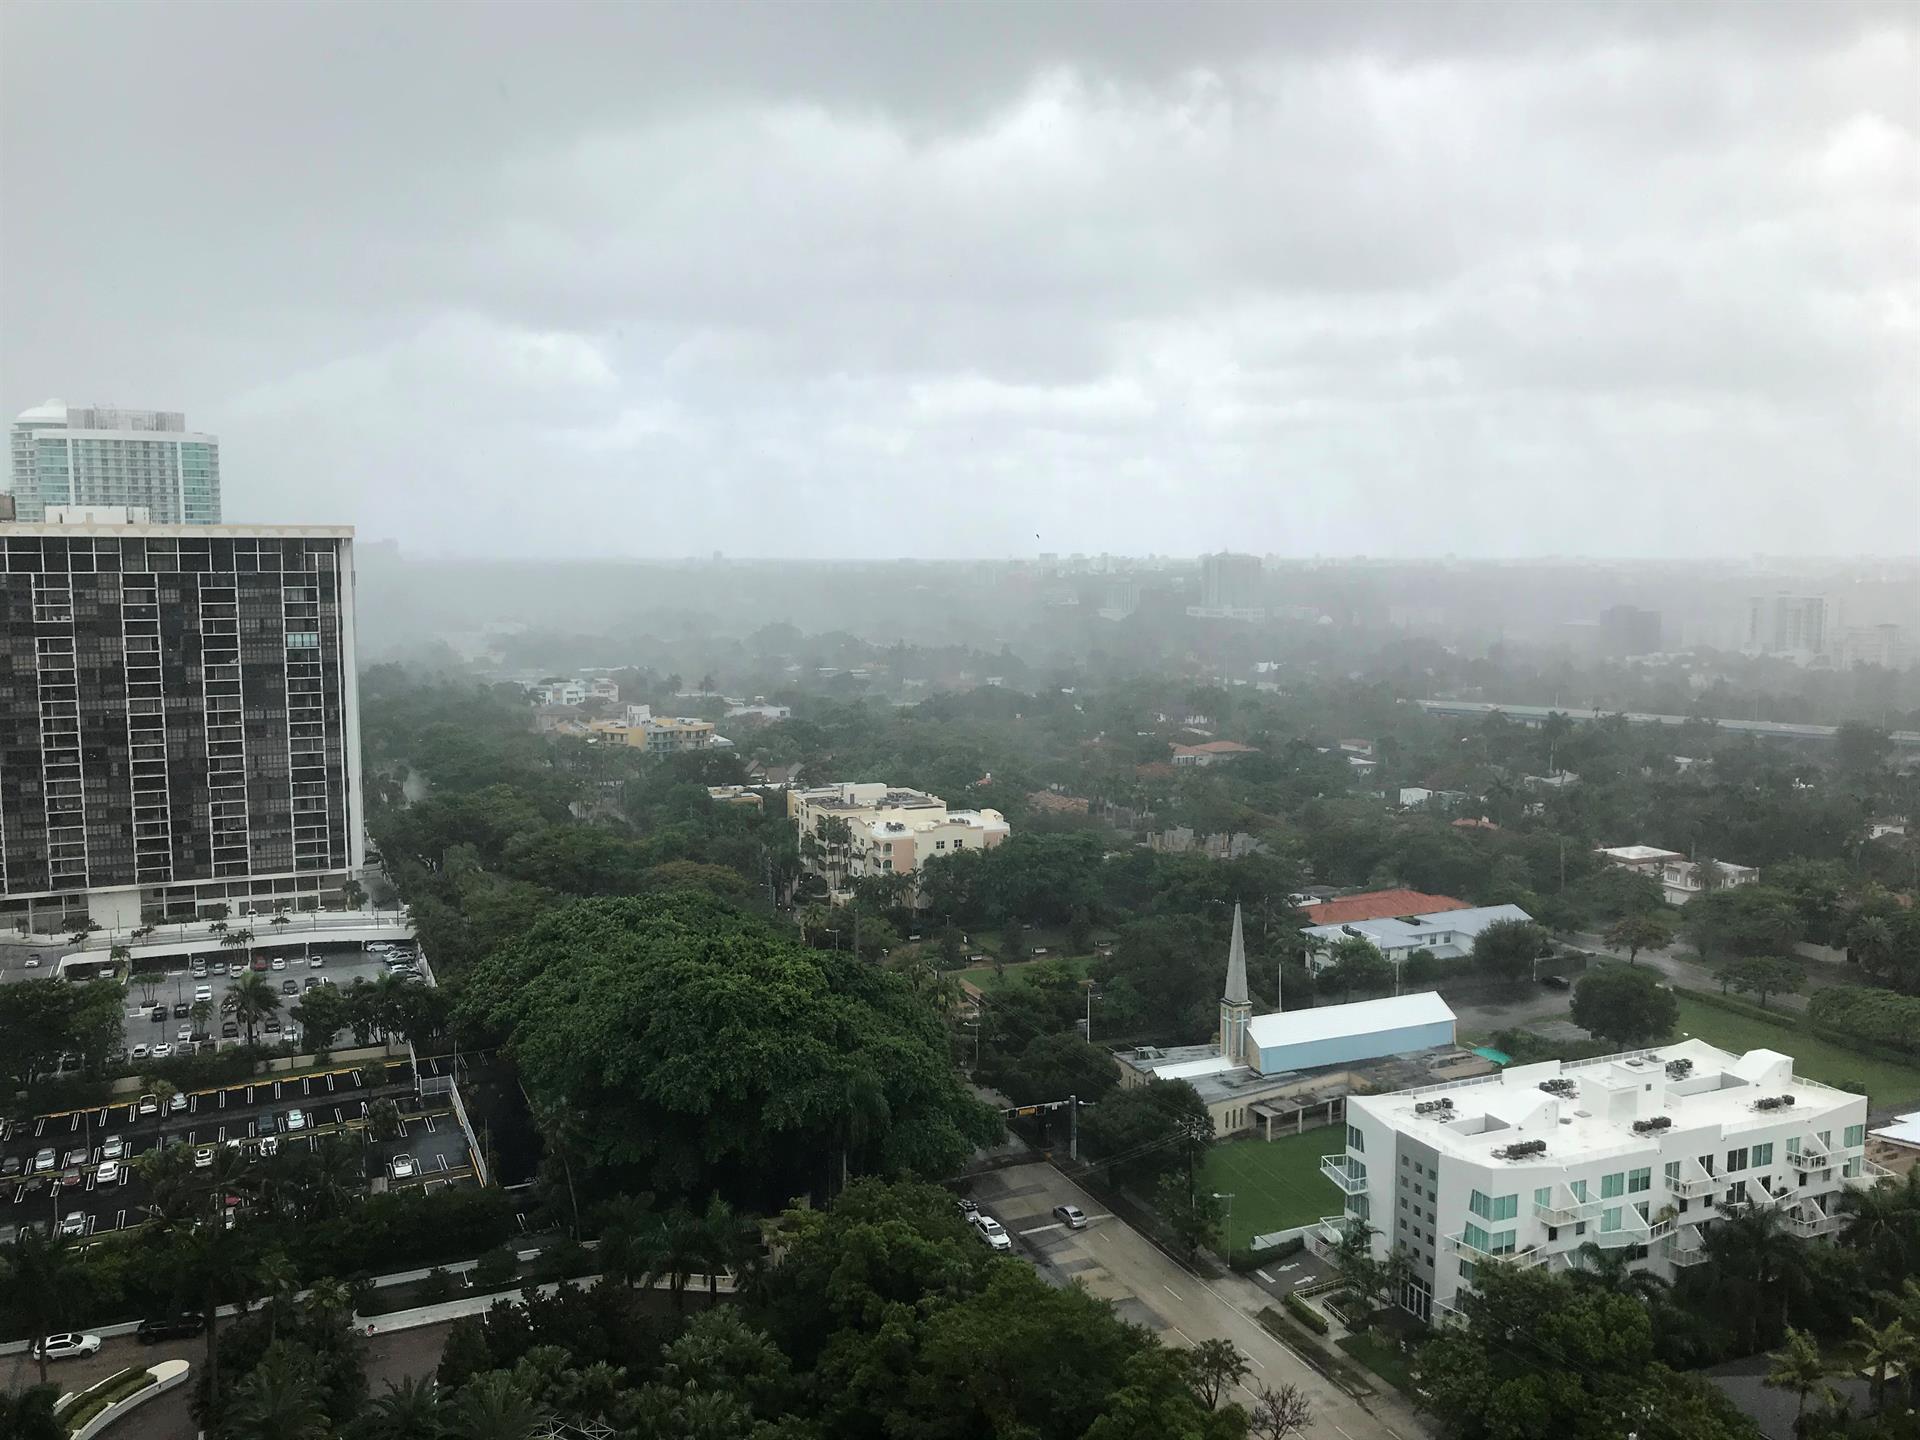 Vista del cielo nublado en la ciudad de Miami, Florida (EE.UU.). Imagen de archivo. EFE/ Ana Mengotti
